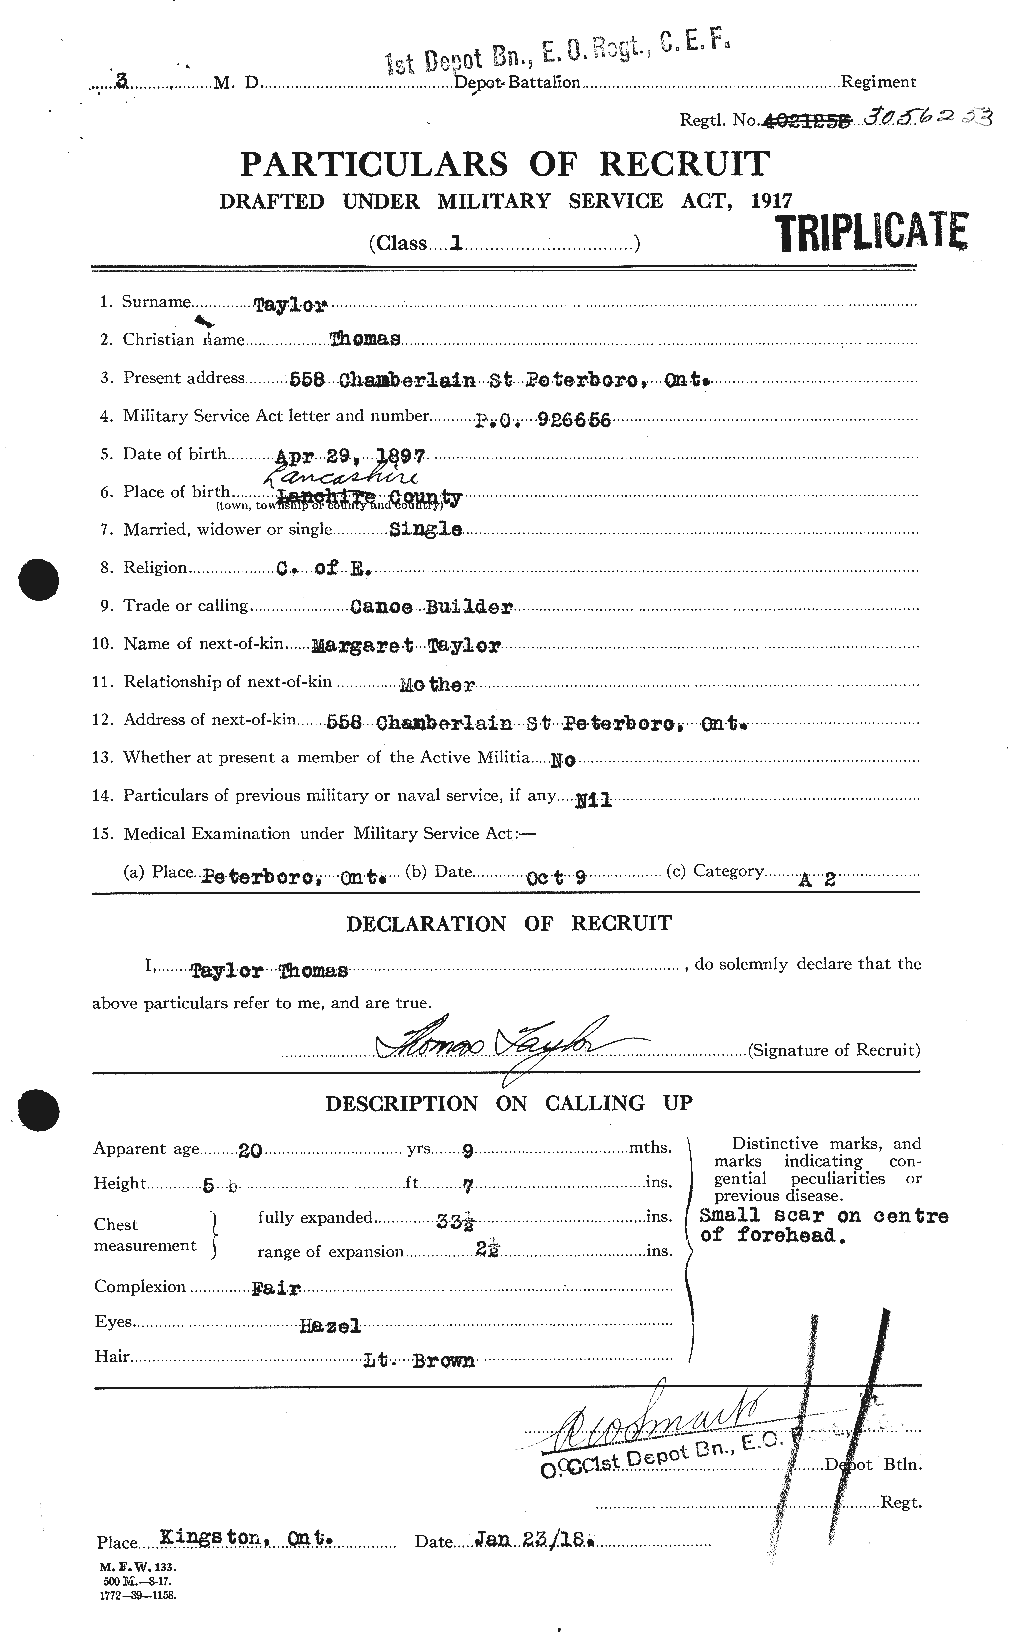 Dossiers du Personnel de la Première Guerre mondiale - CEC 627965a